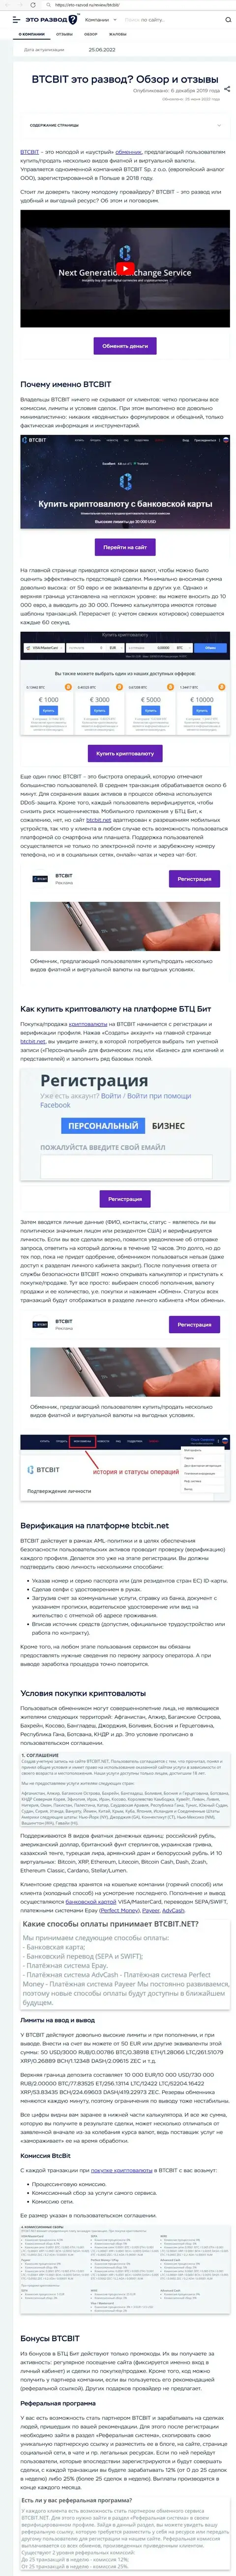 Разбор деятельности и условия сотрудничества онлайн обменника BTC Bit в публикации на онлайн-сервисе eto-razvod ru